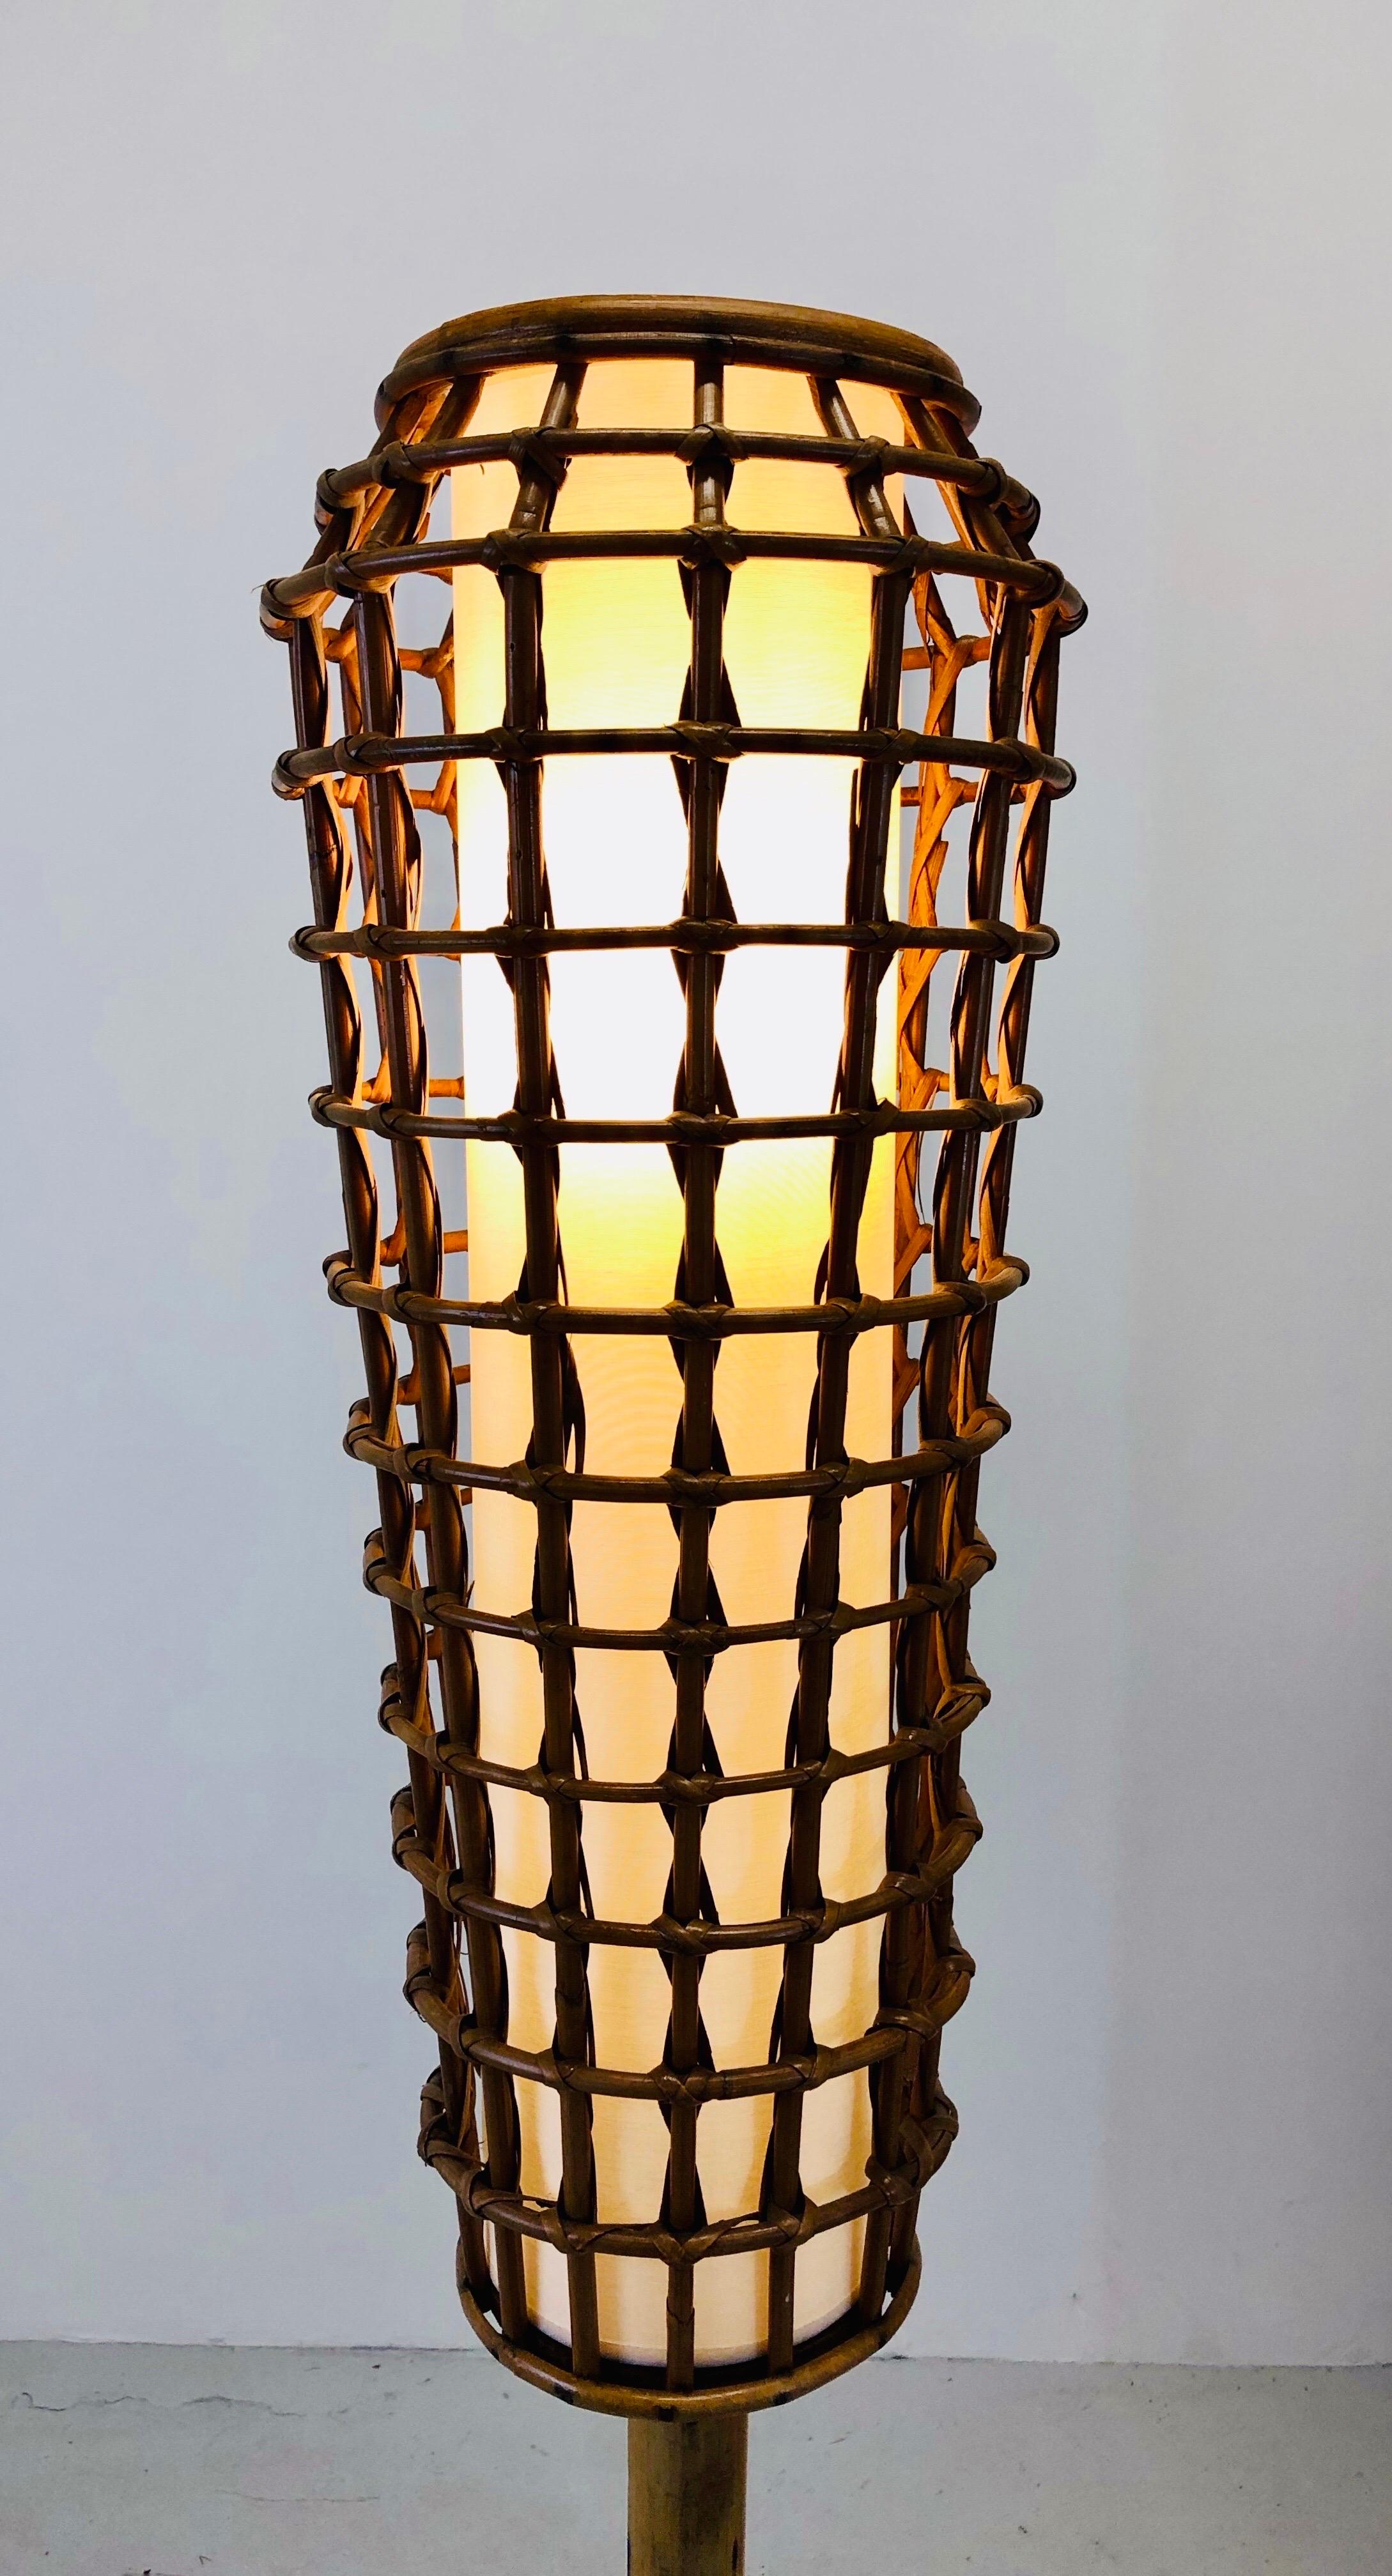 Un superbe lampadaire en rotin des années 50 à la manière de Louis Sognot.
Travail en français 

L'électricité a été entièrement refaite et l'ombrage entièrement rénové.
 